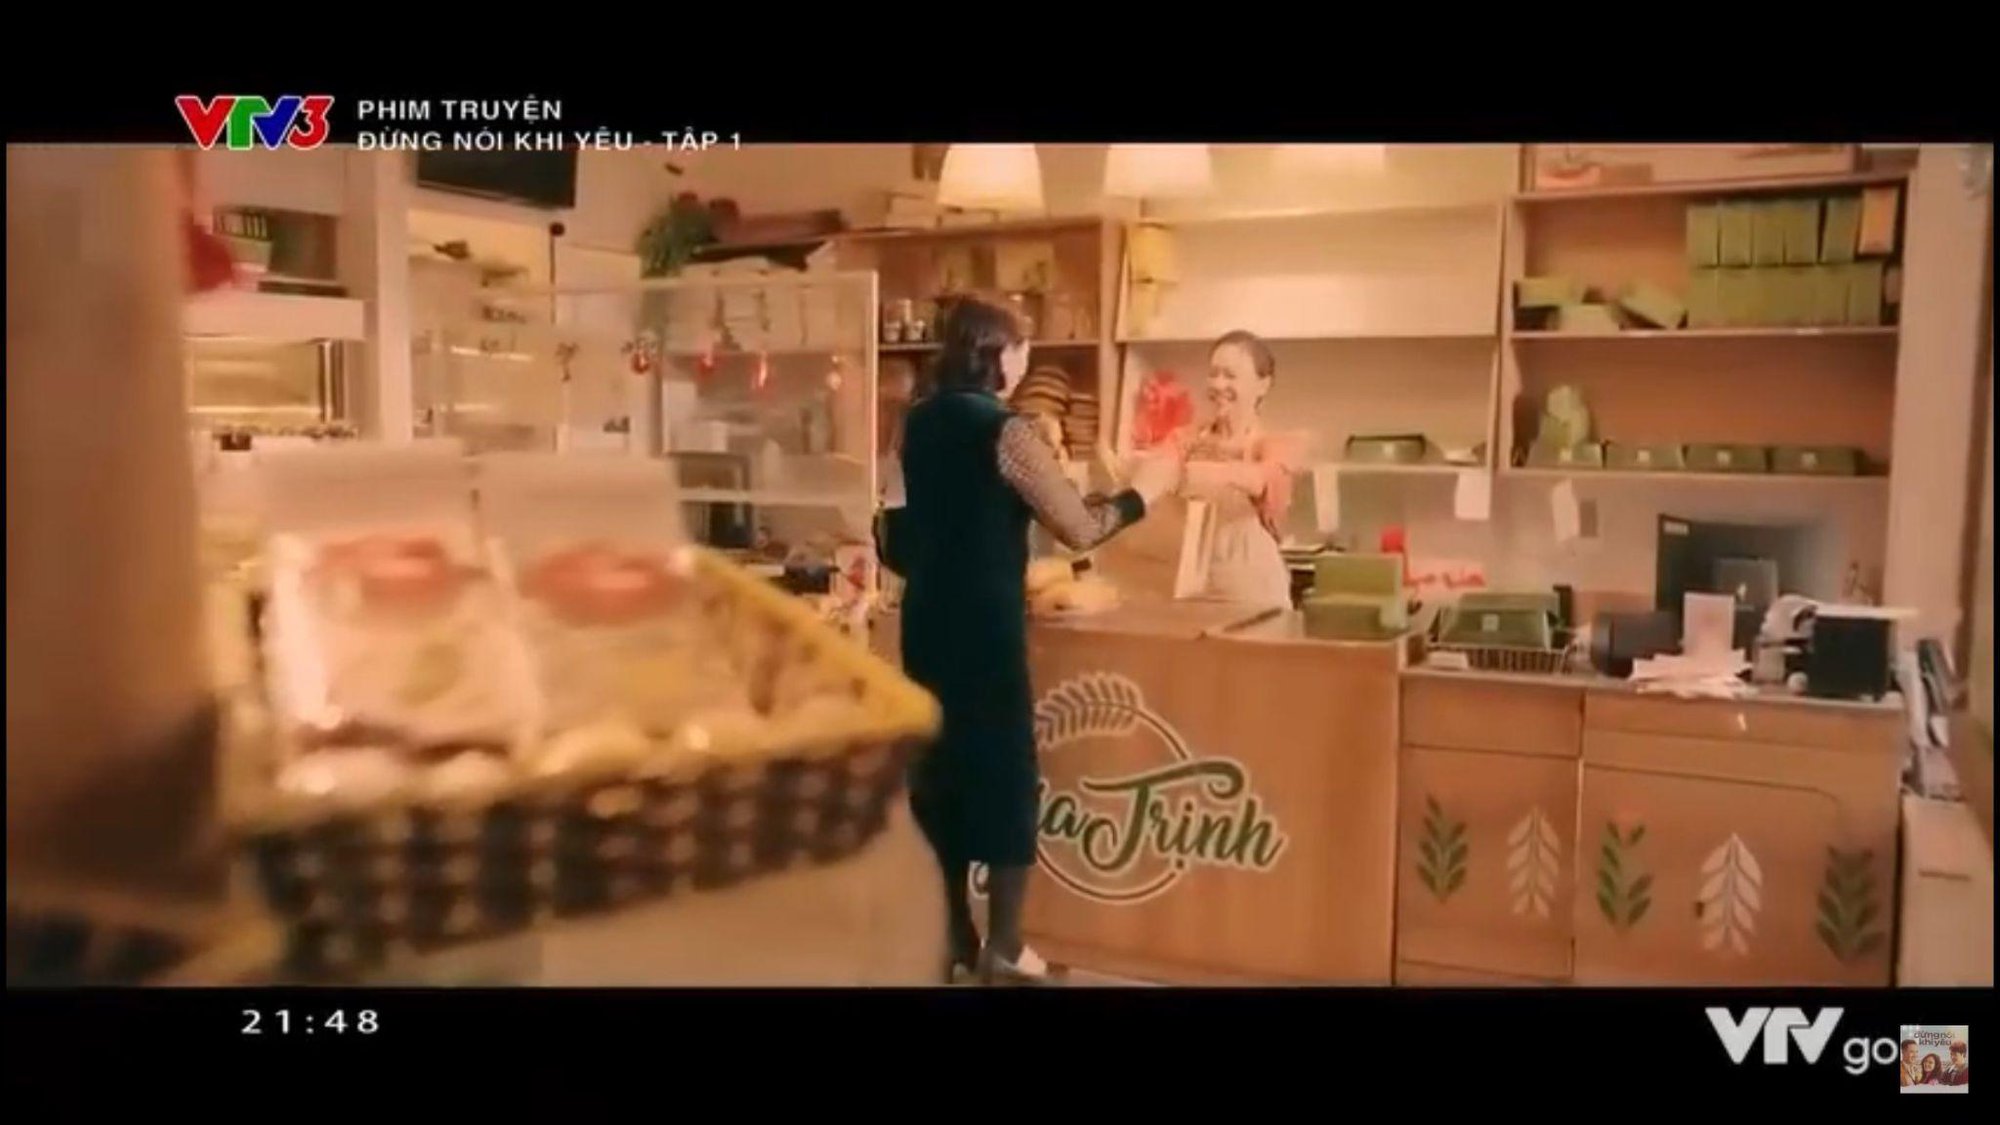 Hoá ra tiệm bánh trong phim “Đừng nói khi yêu” - lại nằm ngay trong khu phố cũ Hà Nội - Ảnh 1.